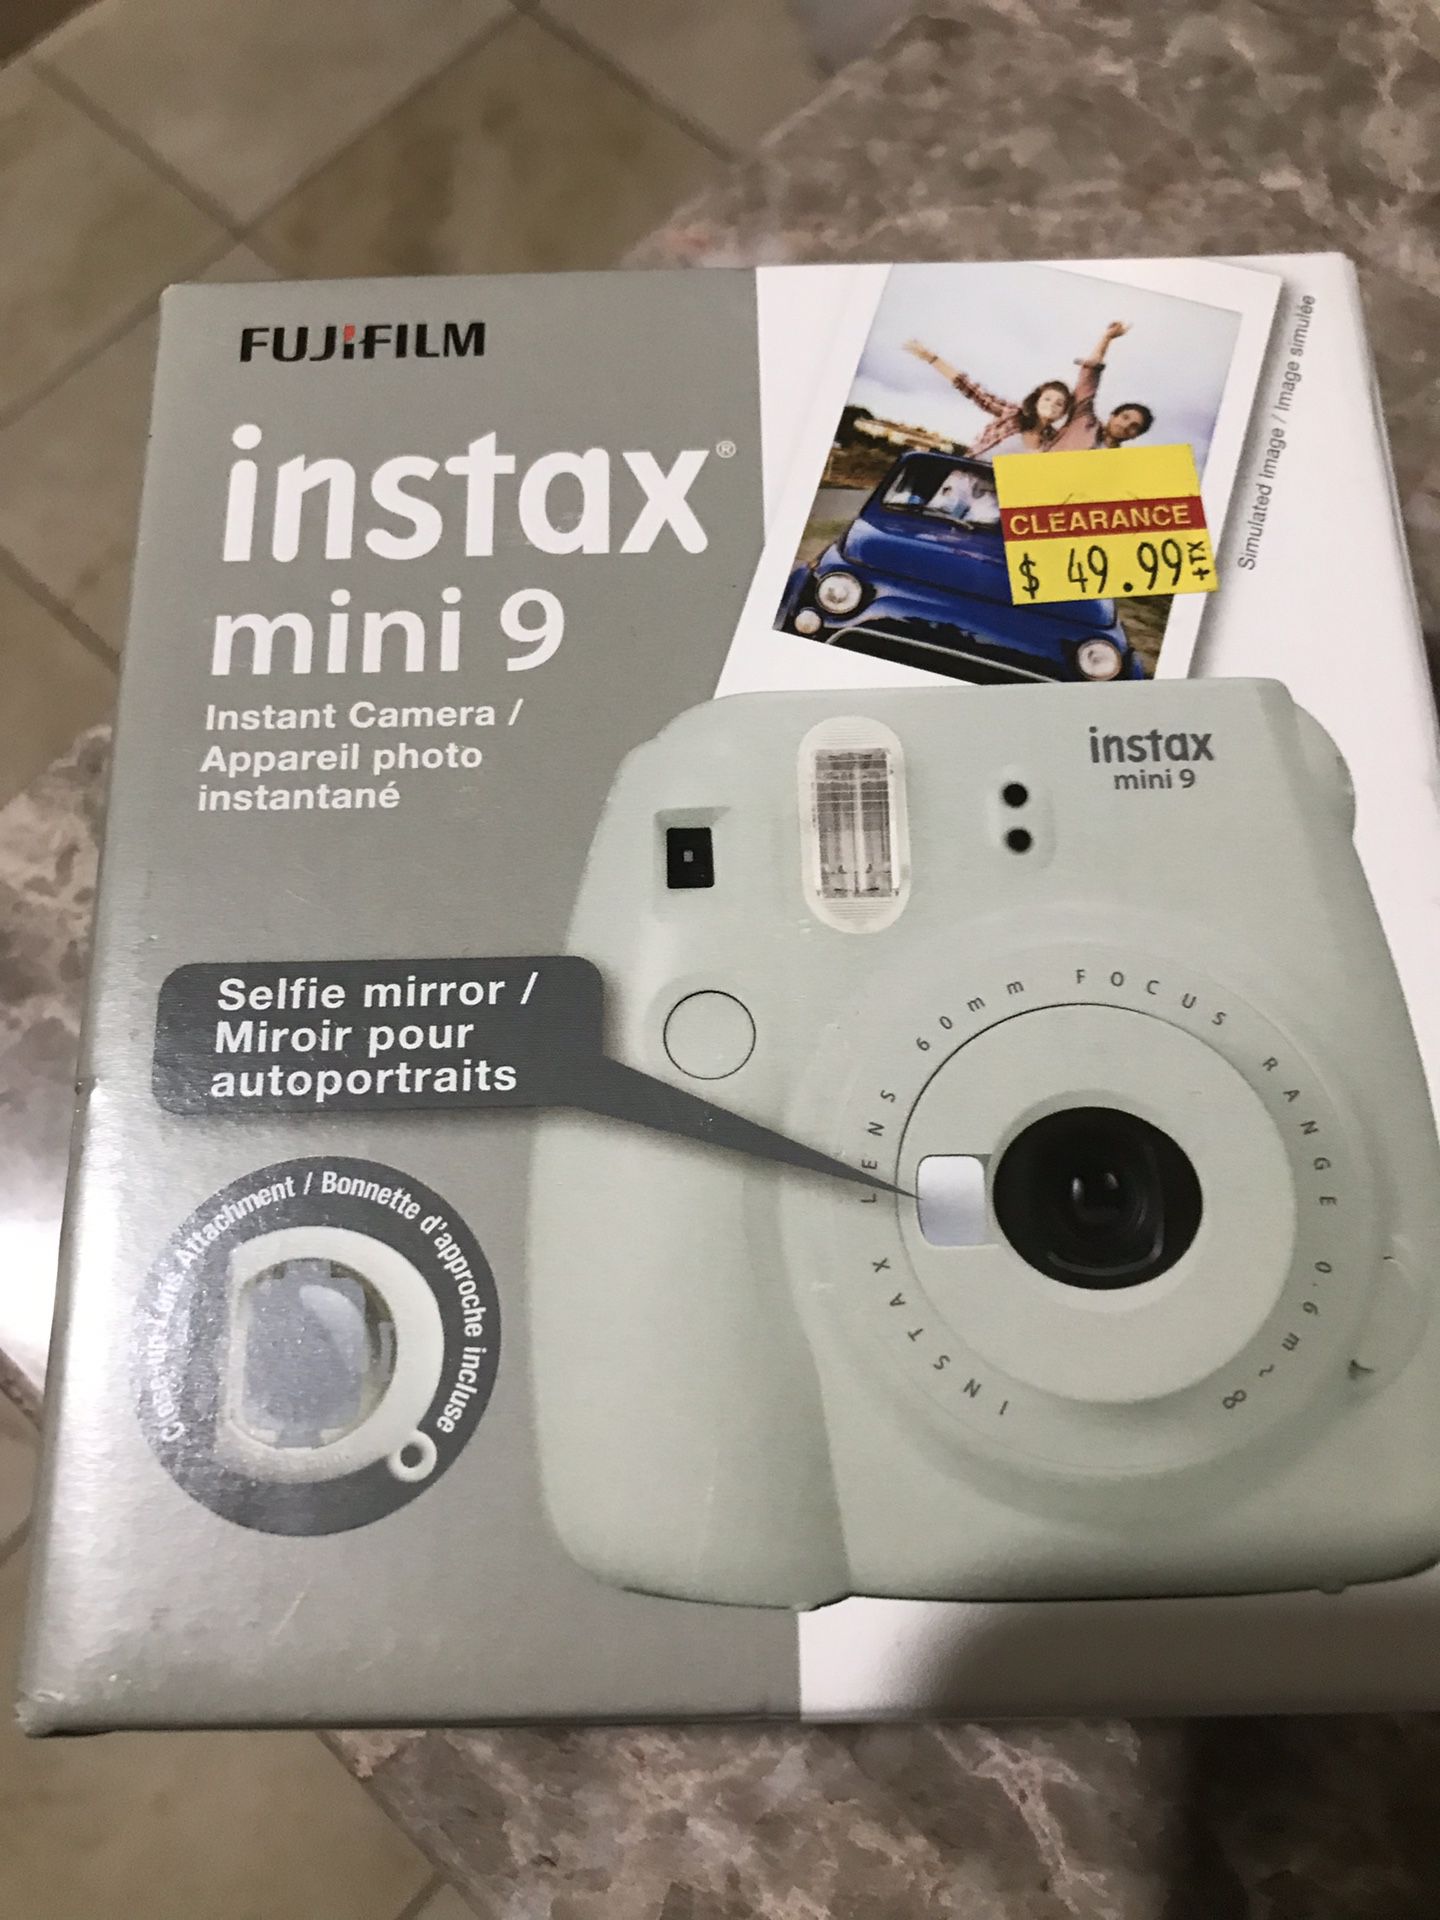 Fuji film instax mini 9 camera